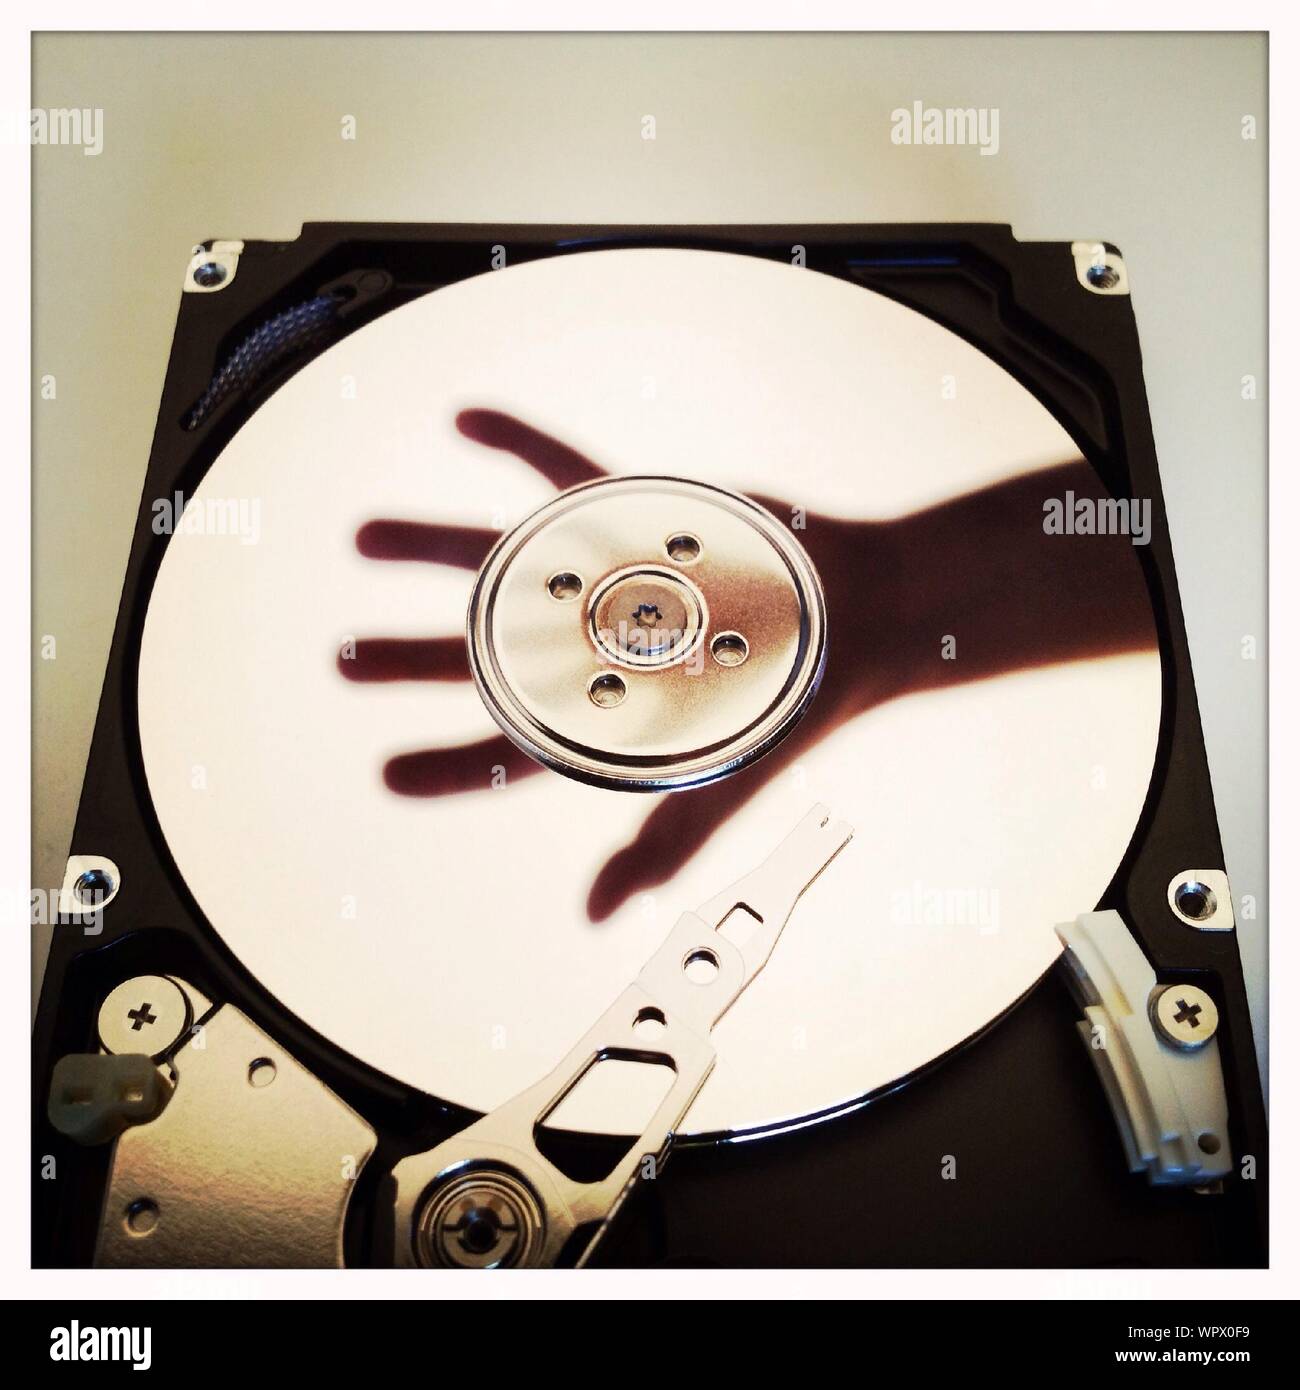 Reflet de la main sur le disque dur de l'ordinateur Photo Stock - Alamy